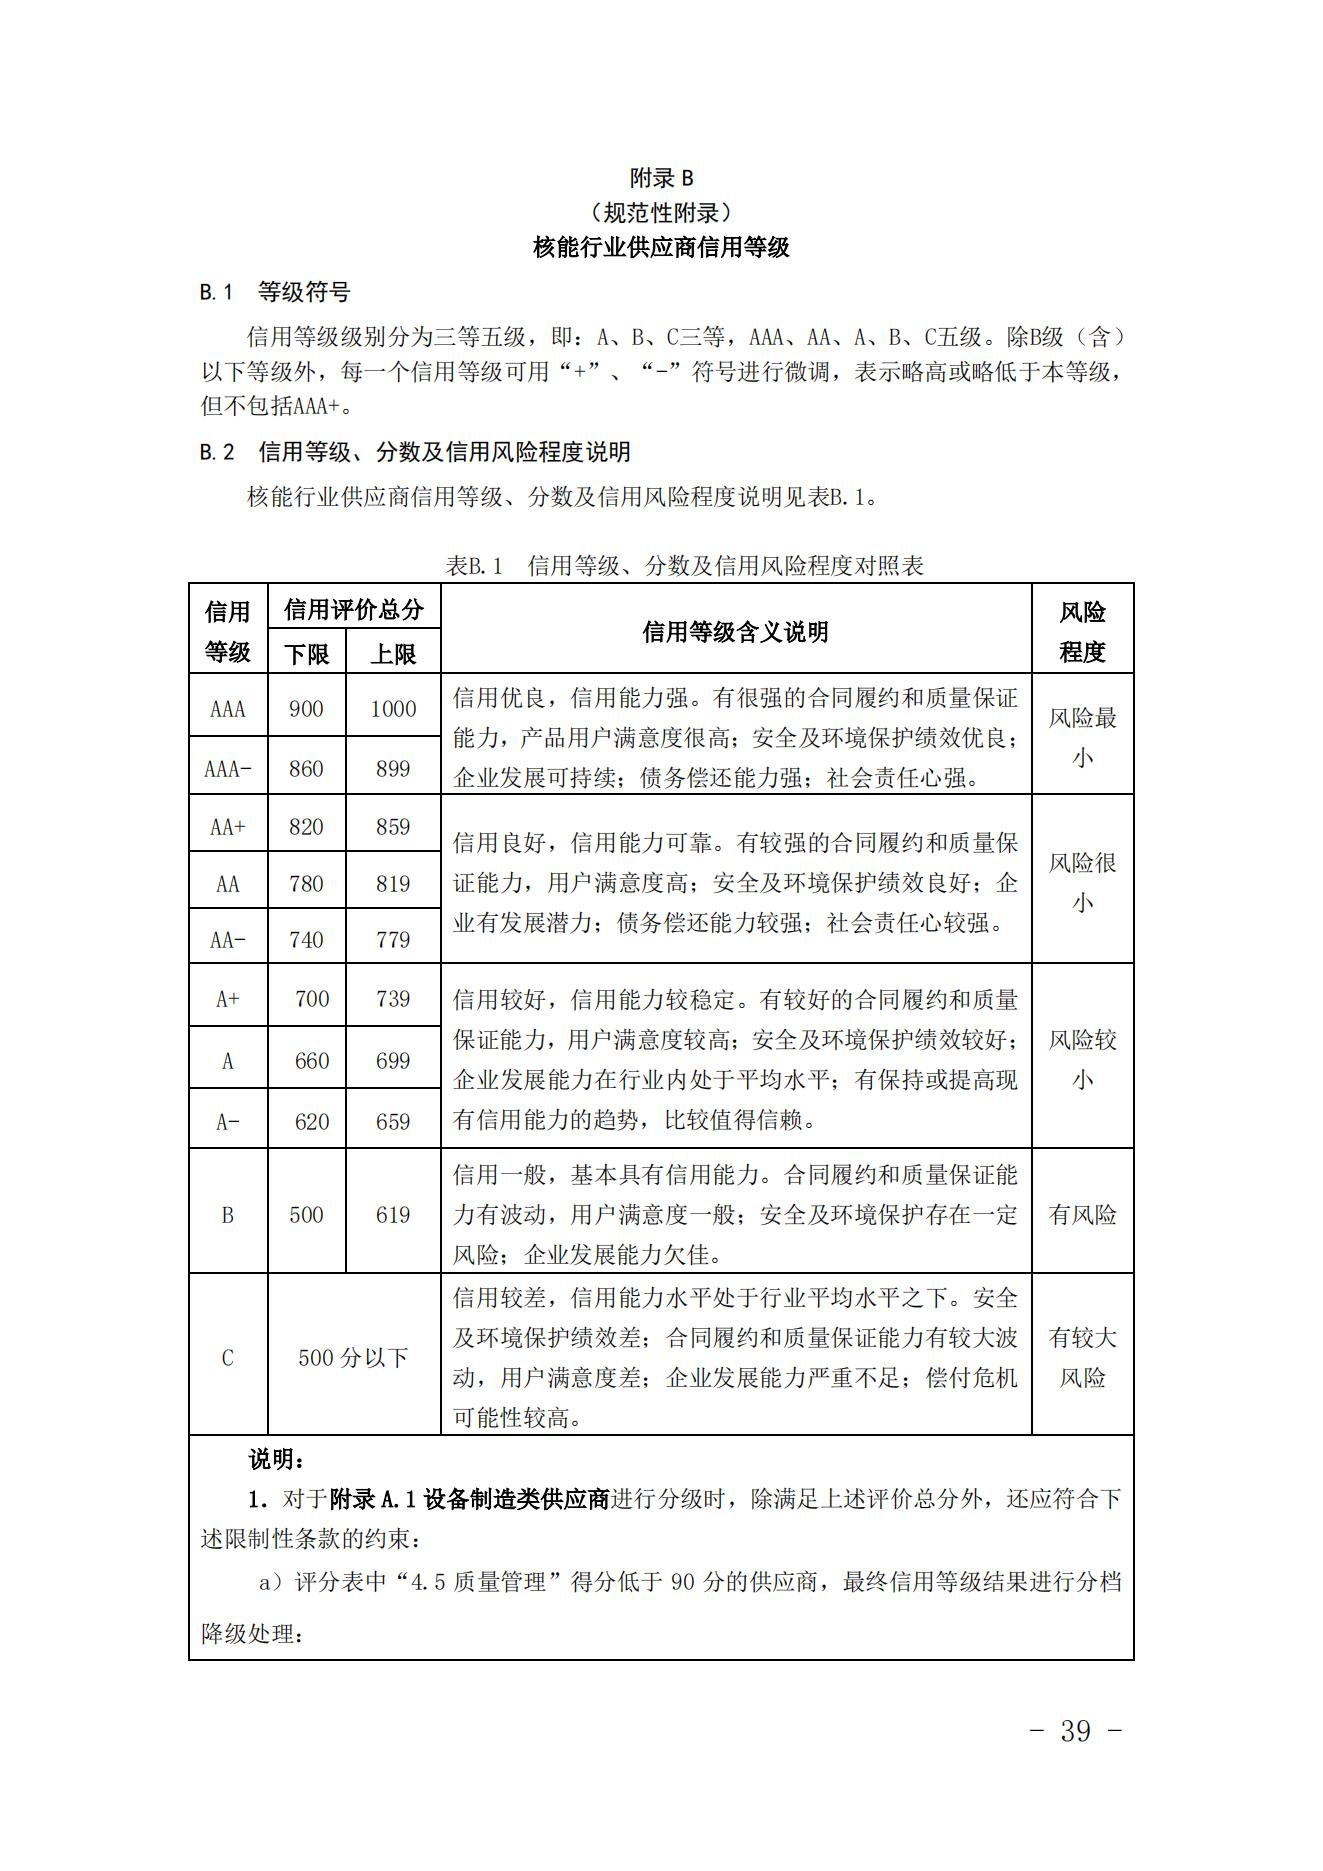 关于印发《中国核能行业协会核能行业供应商信用评价管理办法》《中国核能行业协会核能行业供应商信用评价规范》的通知_38.jpg